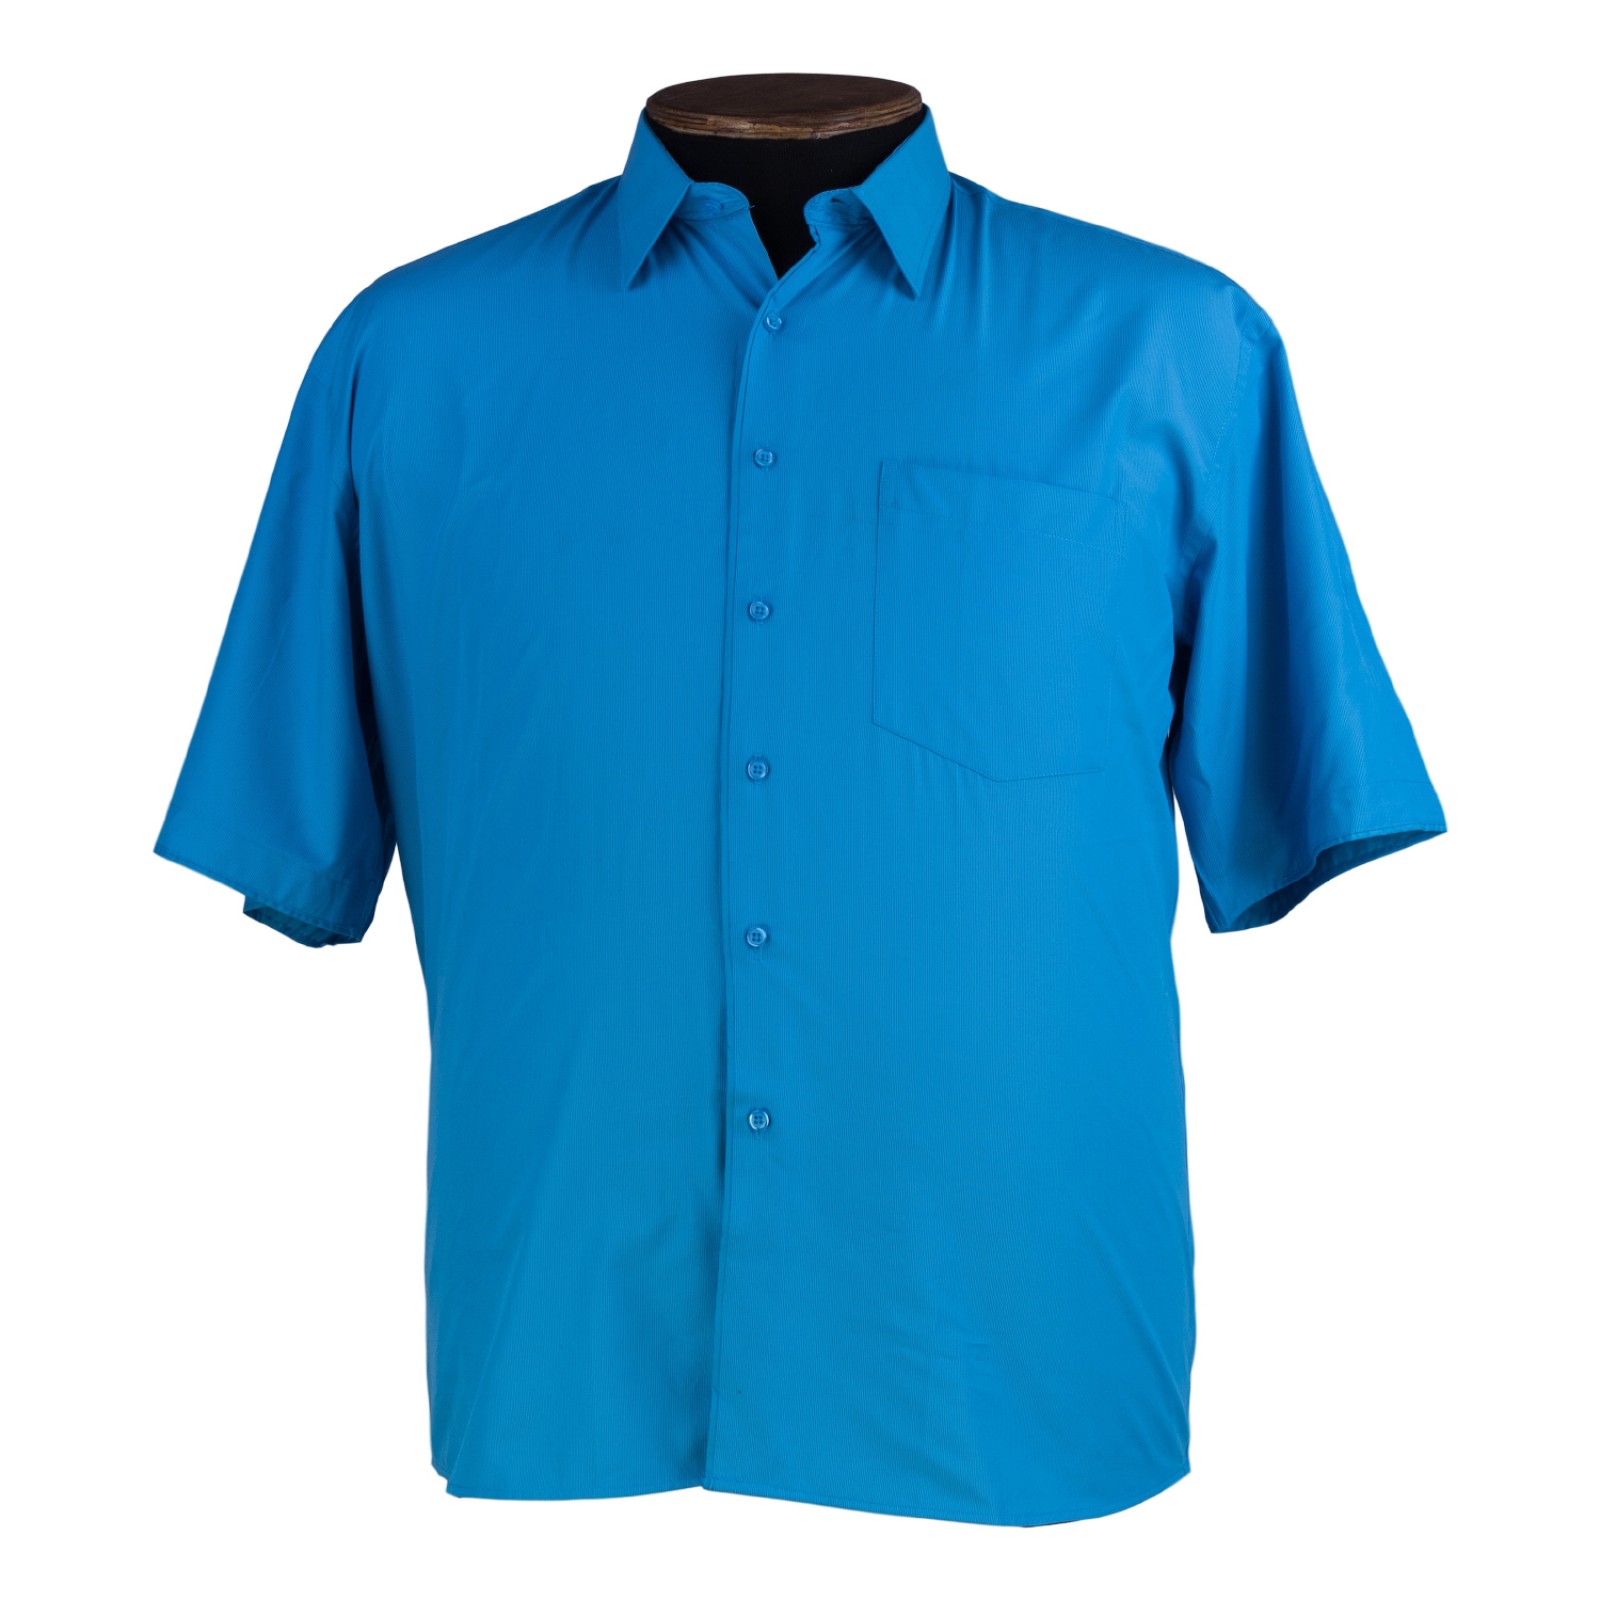 Купить синюю рубашку мужскую. Синяя рубашка мужская. Бирюзовая рубашка мужская. Рубашка мужская бирюзового цвета. Рубашки голубого цвета.